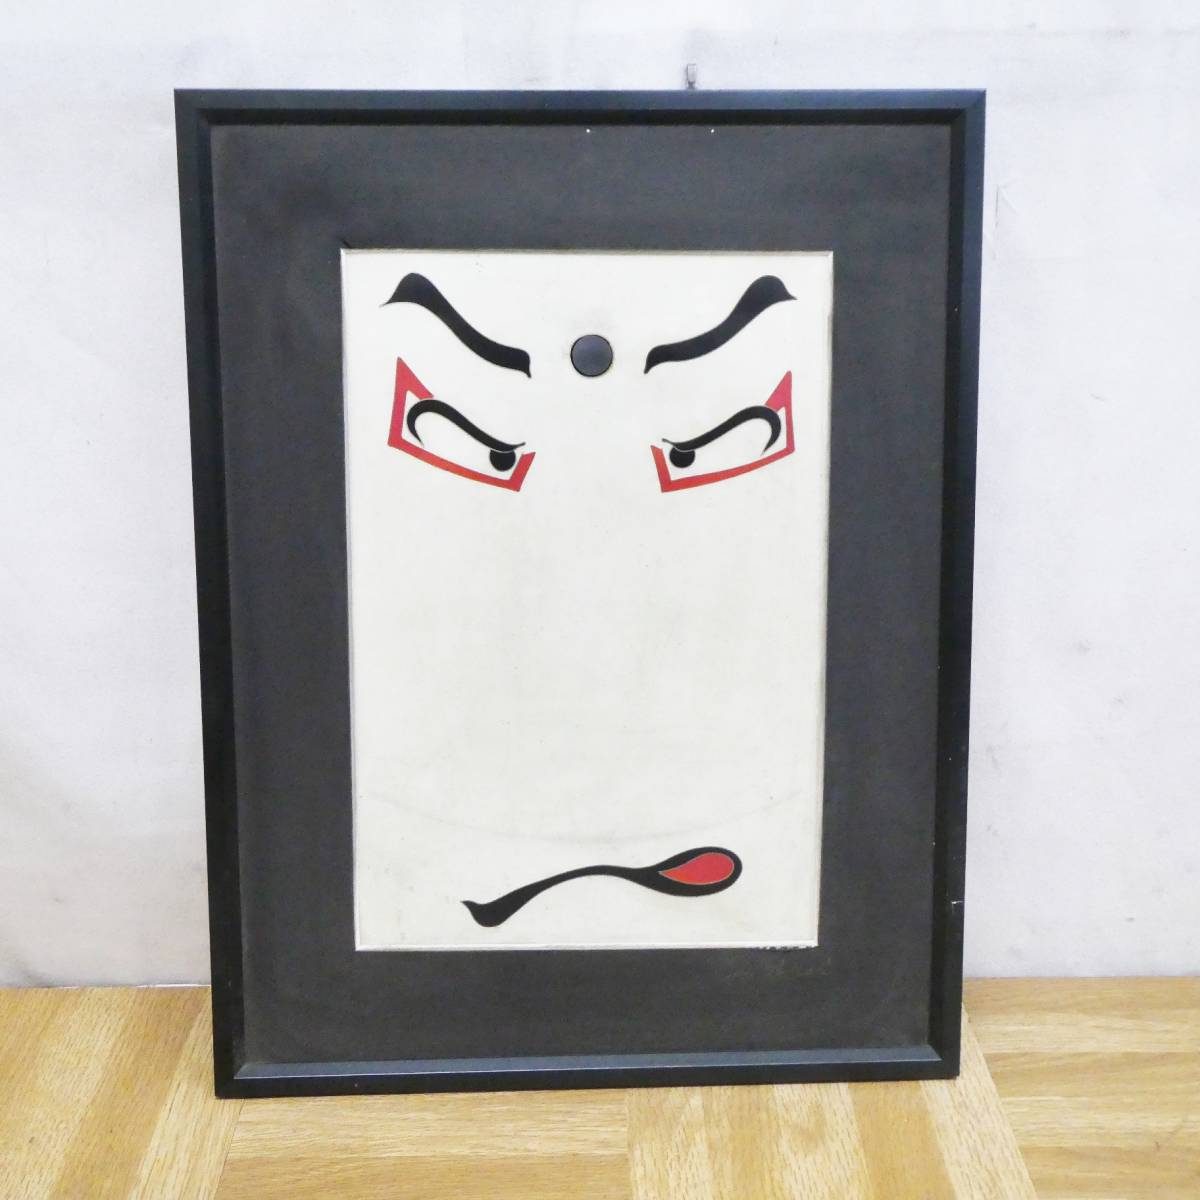 O962 [Súper Raro] Ukiyo-e Sharaku Pintura japonesa enmarcada única Probablemente detalles de copia desconocidos /3, cuadro, Ukiyo-e, imprimir, imagen kabuki, foto del actor